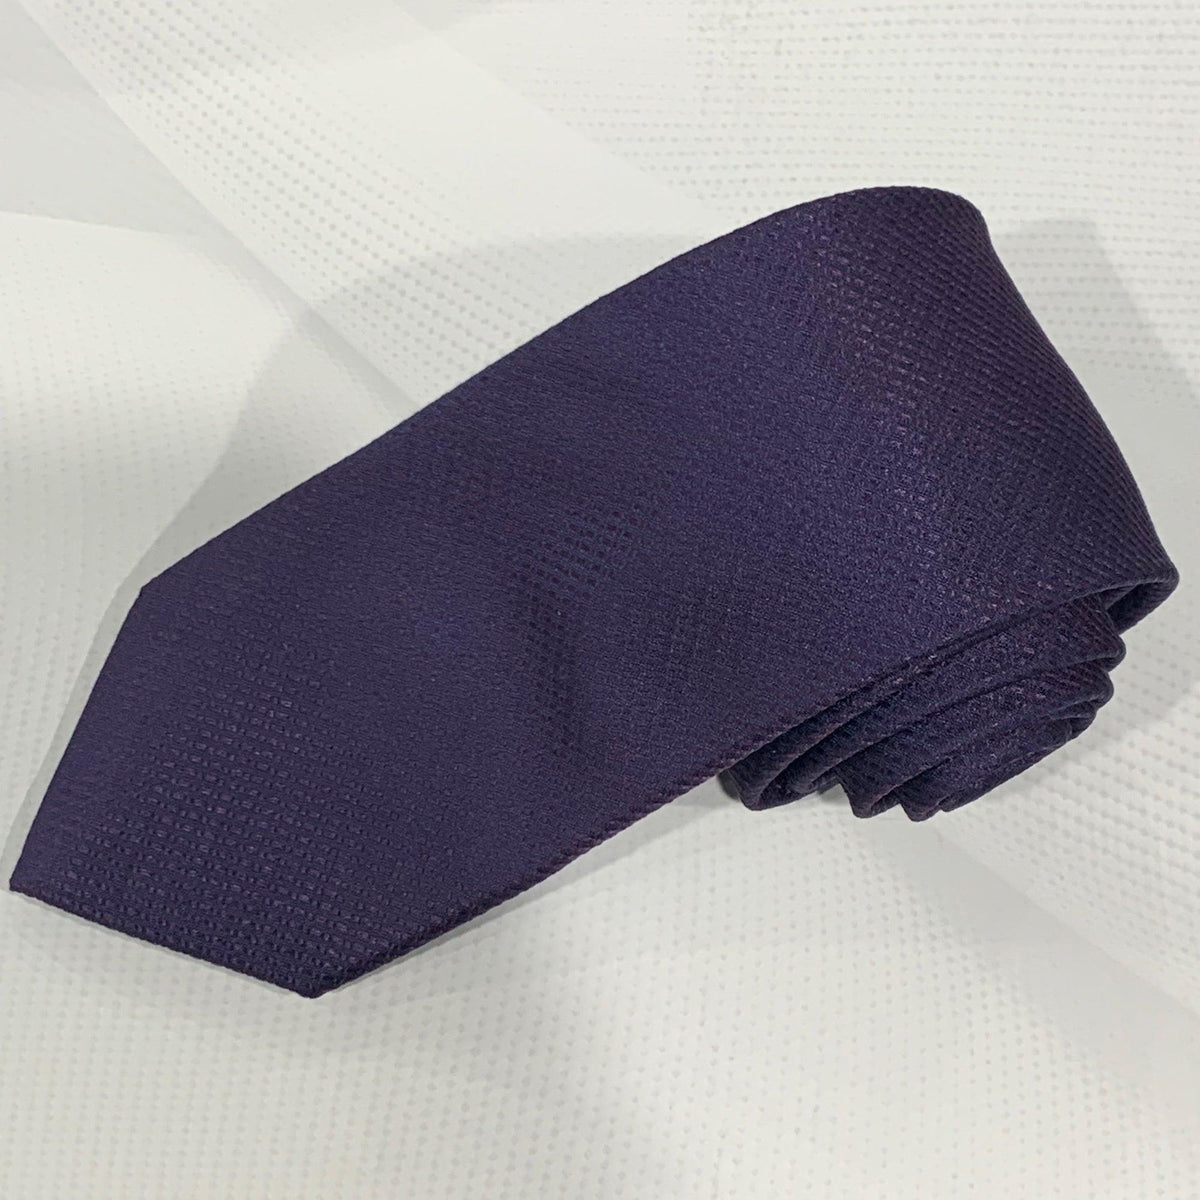 X19055-6 Silk Tie - Harrys for Menswear